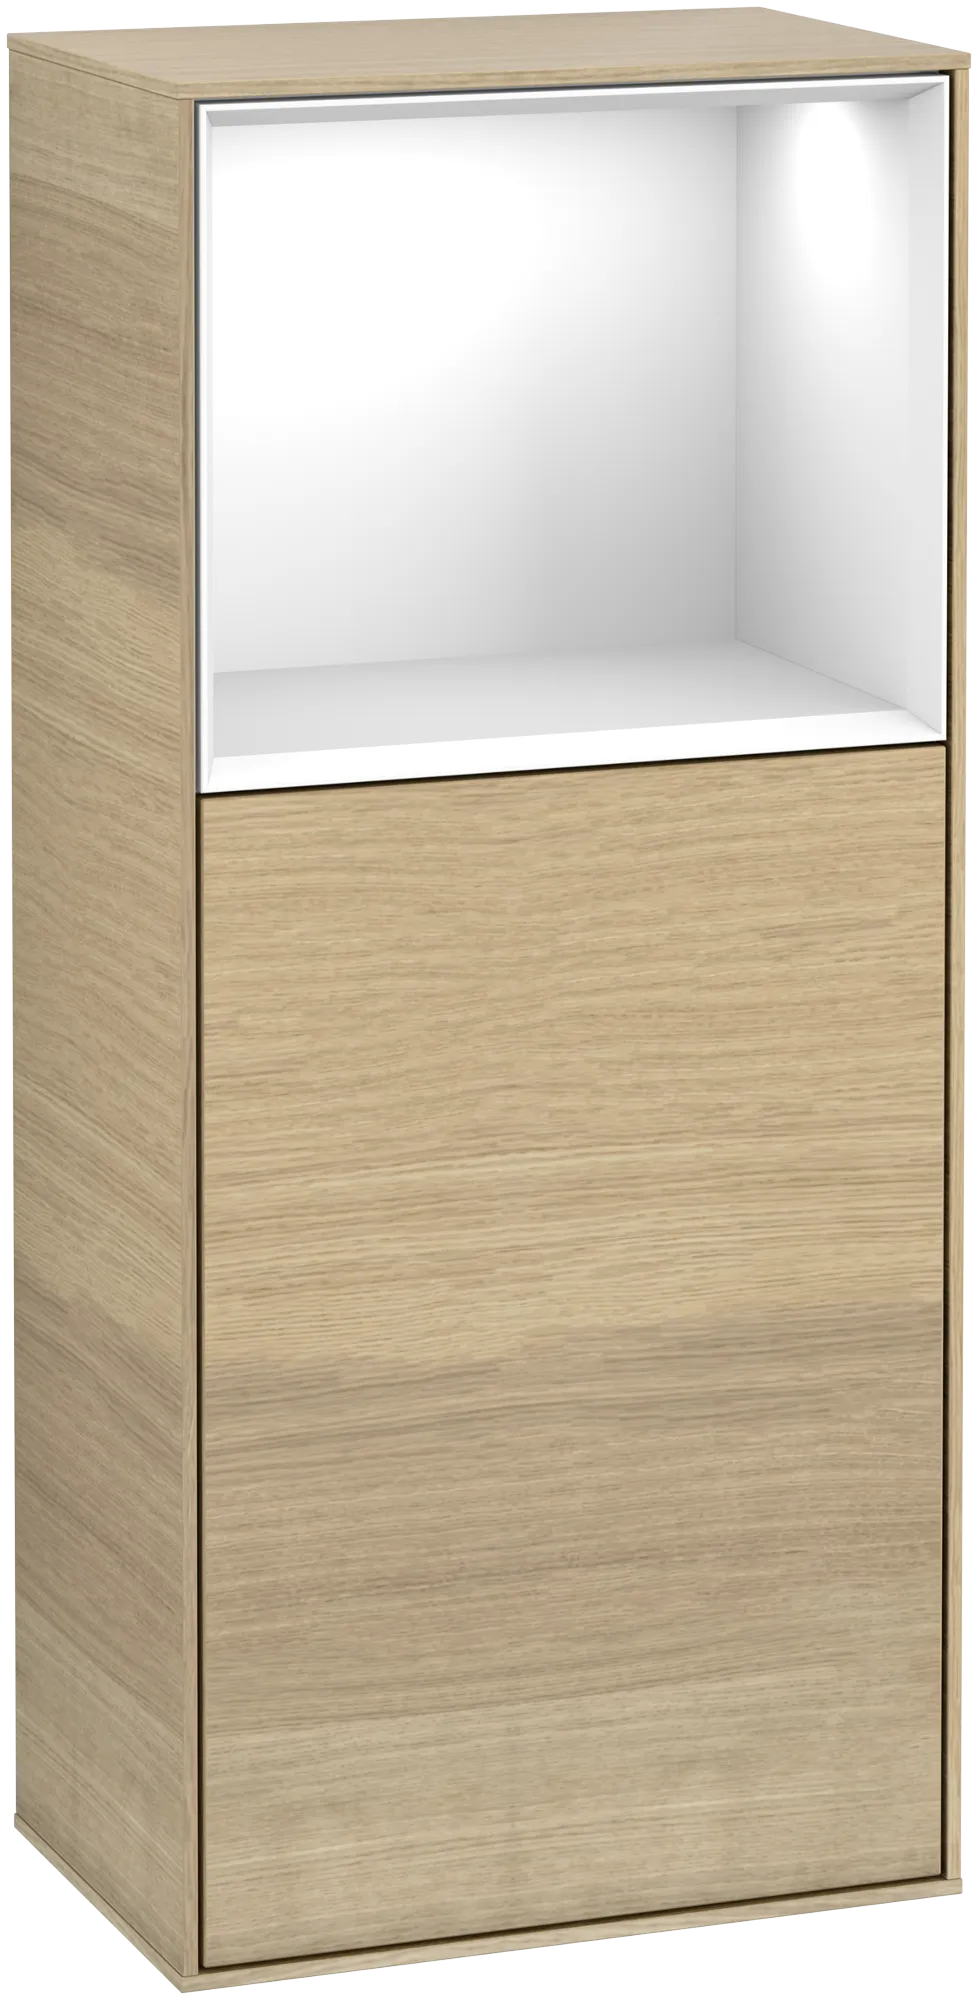 Bild von VILLEROY BOCH Finion Seitenschrank, mit Beleuchtung, 1 Tür, 418 x 936 x 270 mm, Oak Veneer / Glossy White Lacquer #G510GFPC